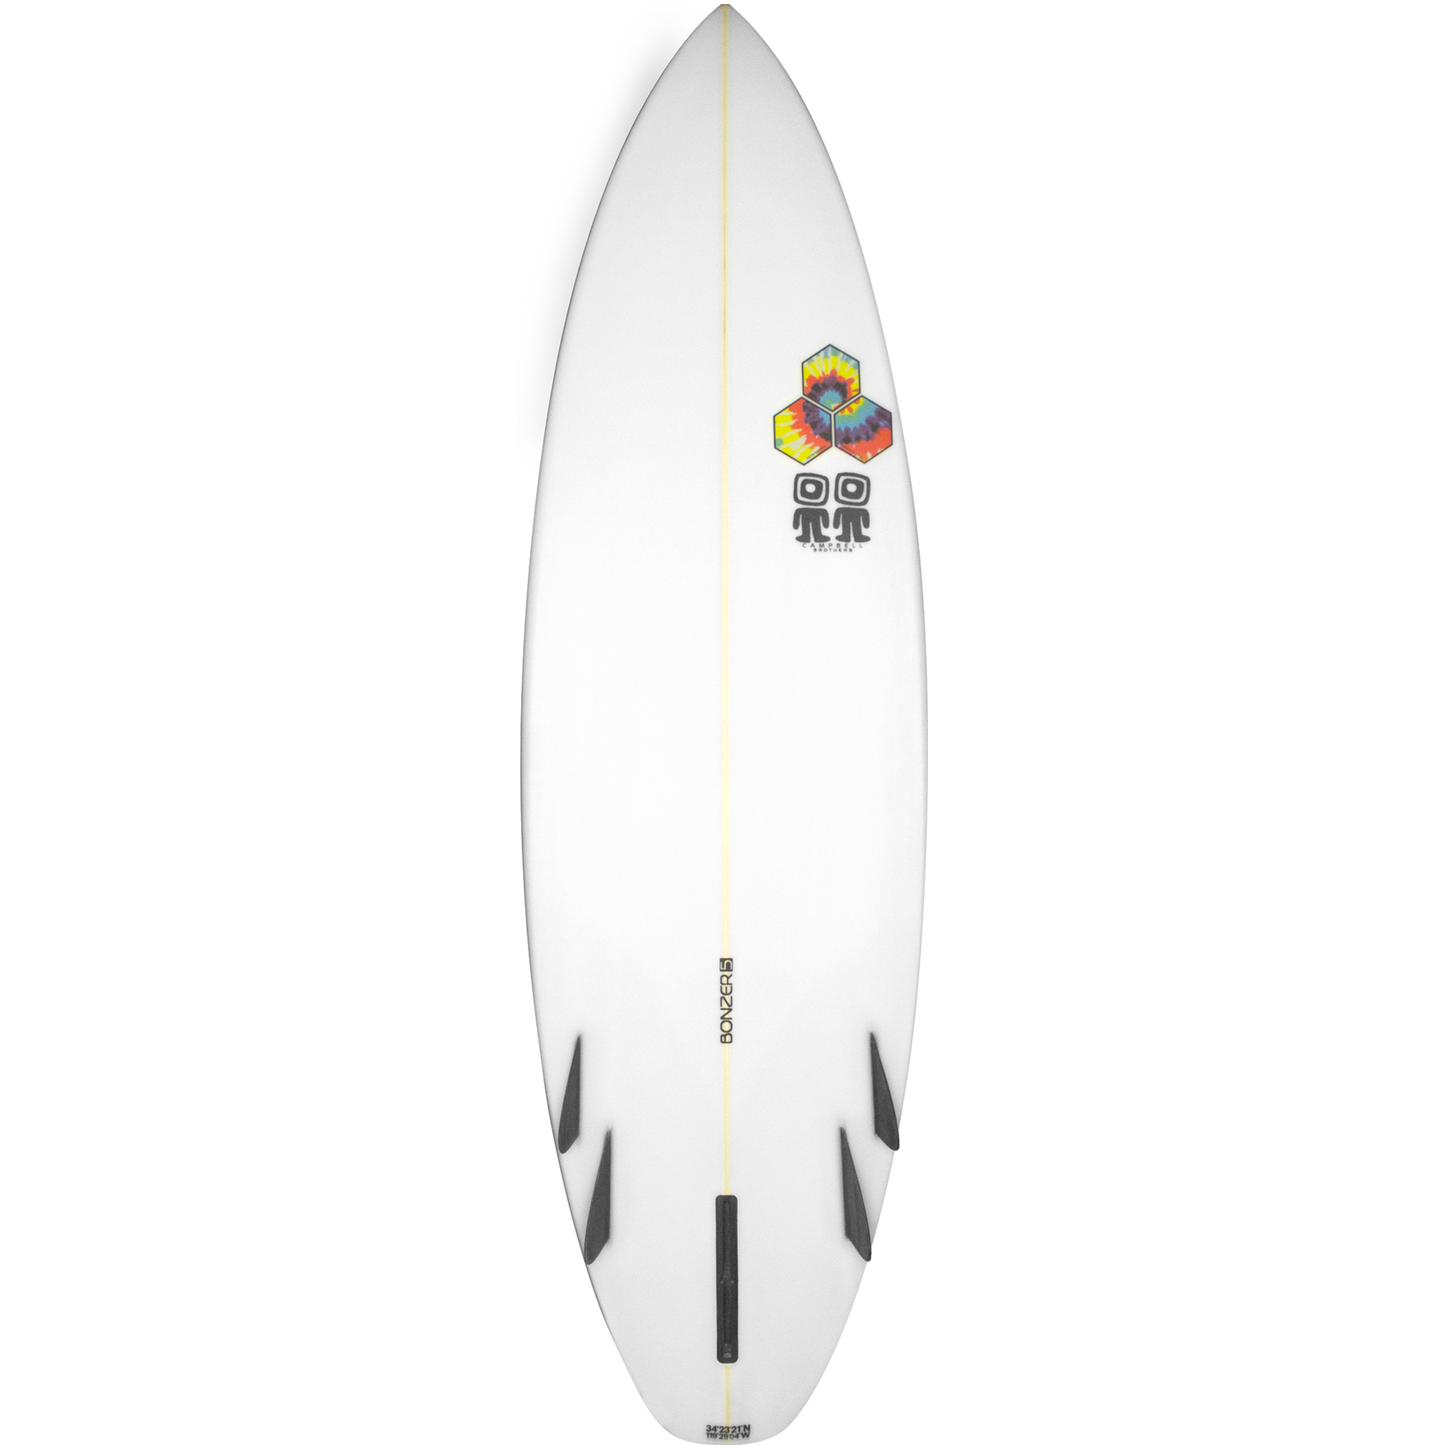 Channel Islands - Bonzer Shelter Surfboard